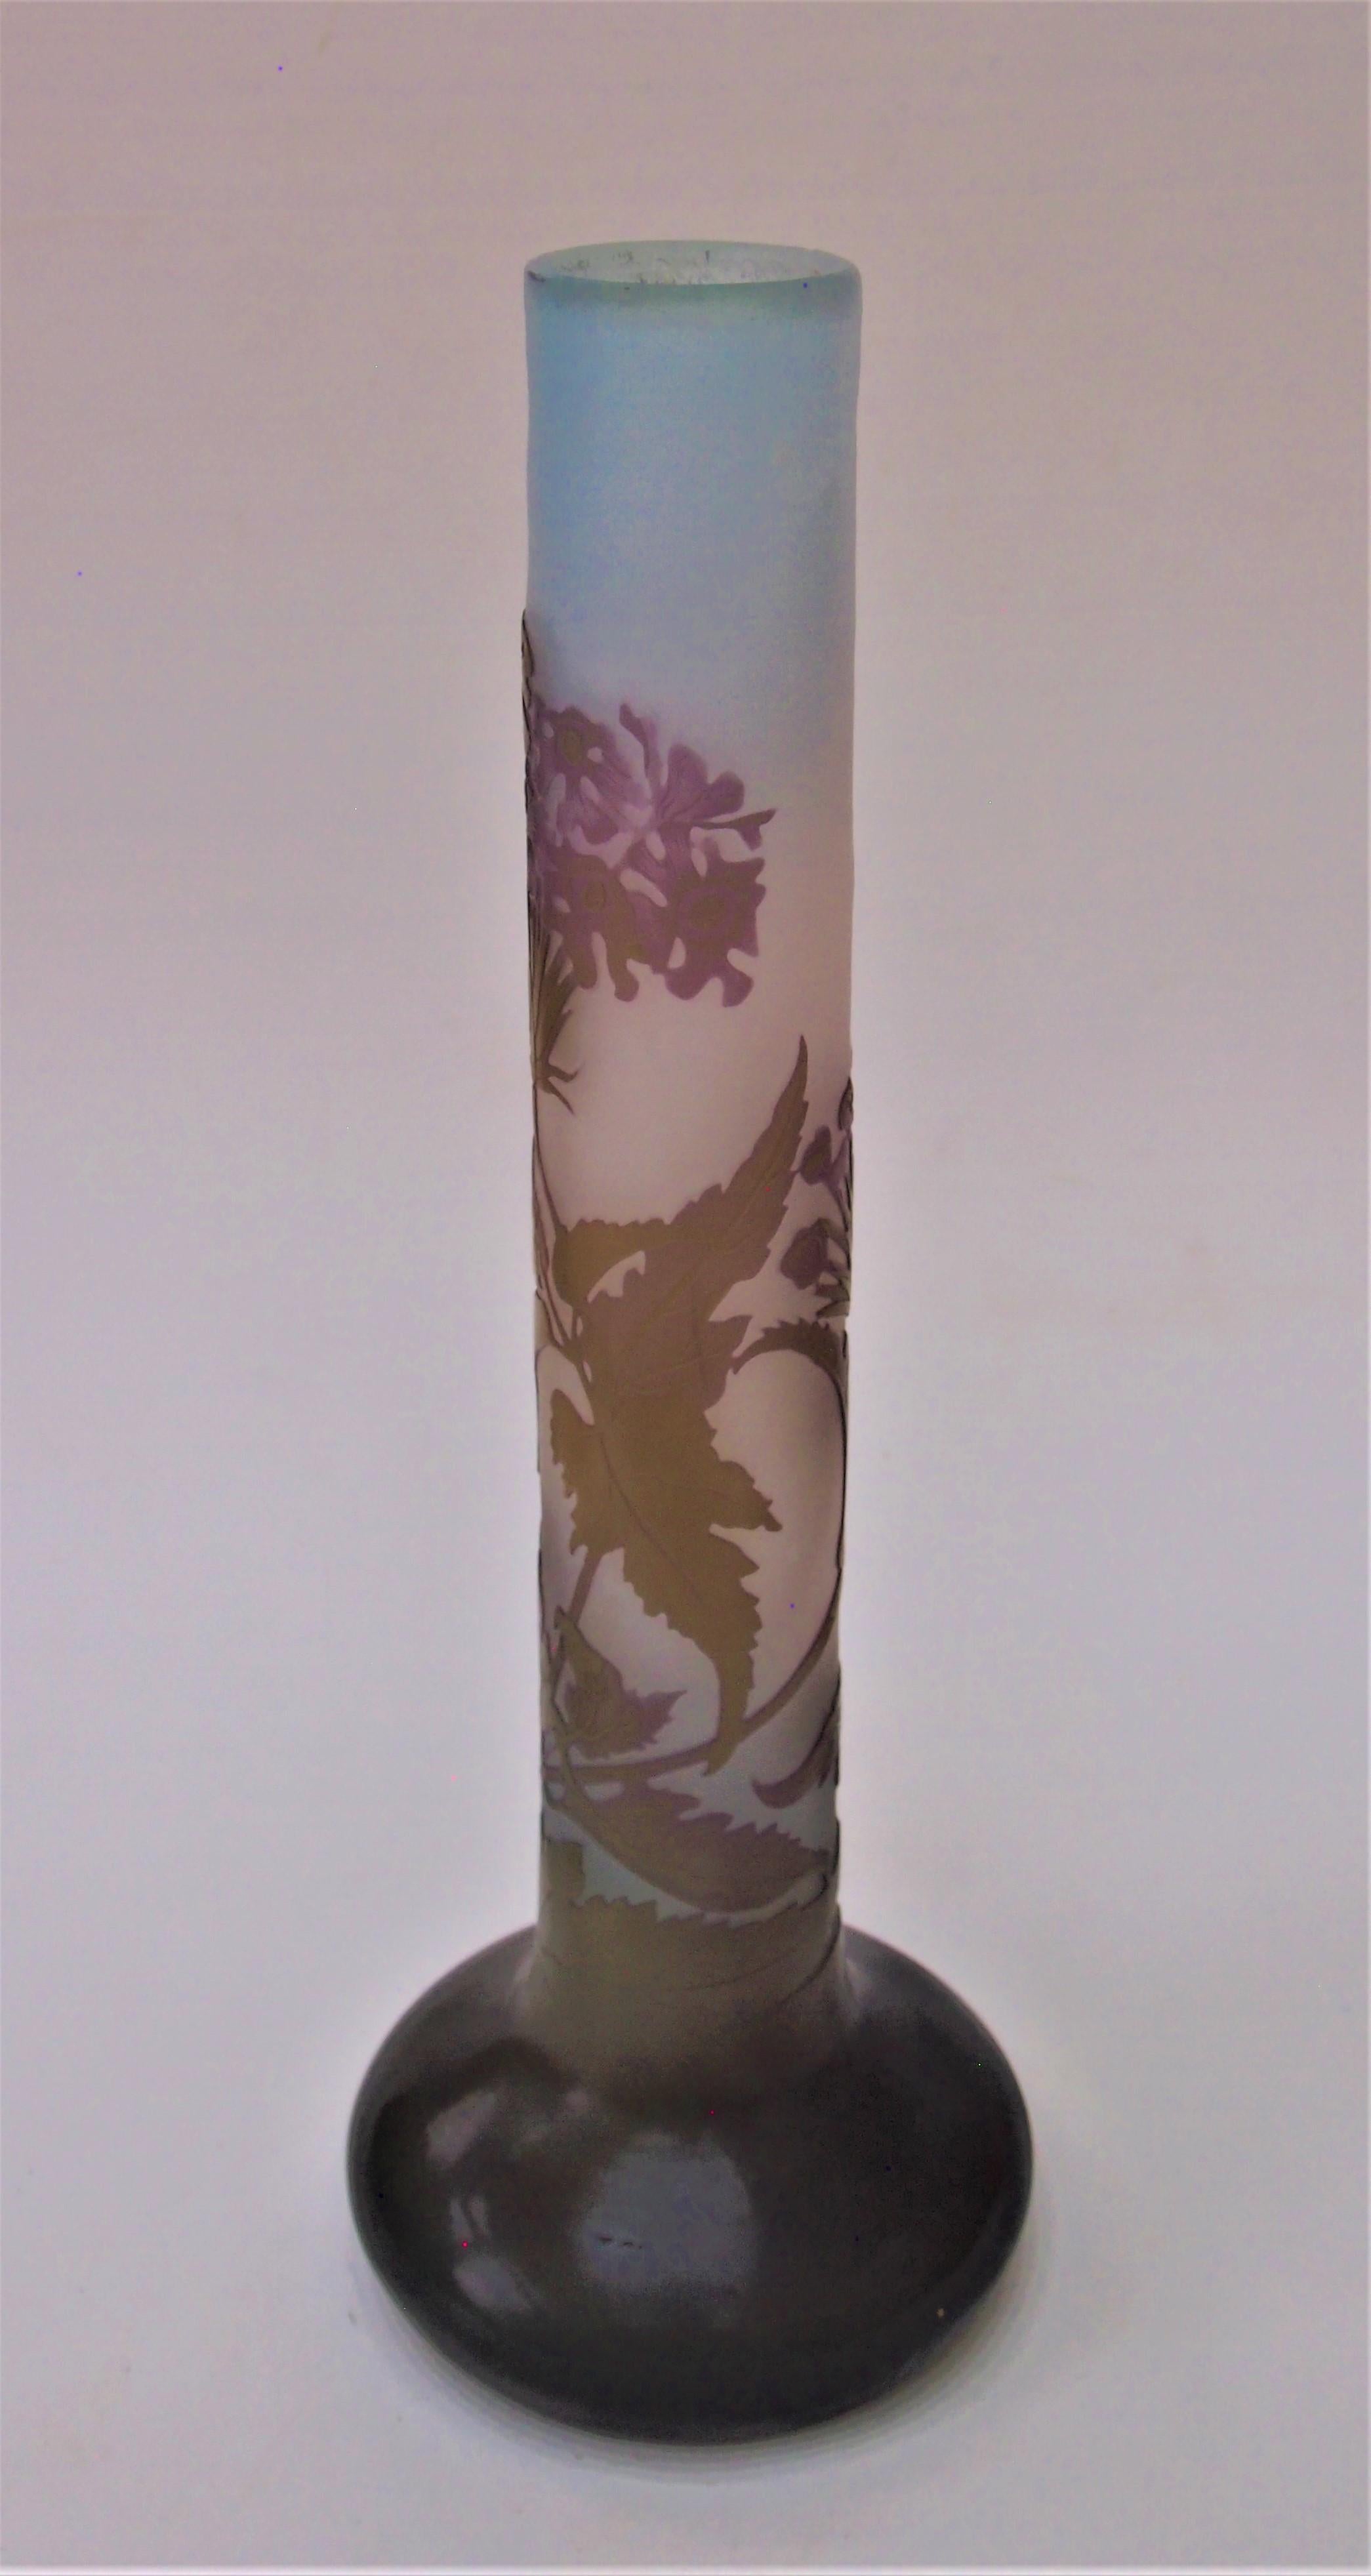 Étonnant  Grand vase à bâtonnets Emile Galle en camaïeu de violet dramatique et de vert foncé sur fond bleu vif - représentant des branches de verveine en fleur, (une plante de la famille de l'oranger), et des fleurs de la famille de l'oranger (une